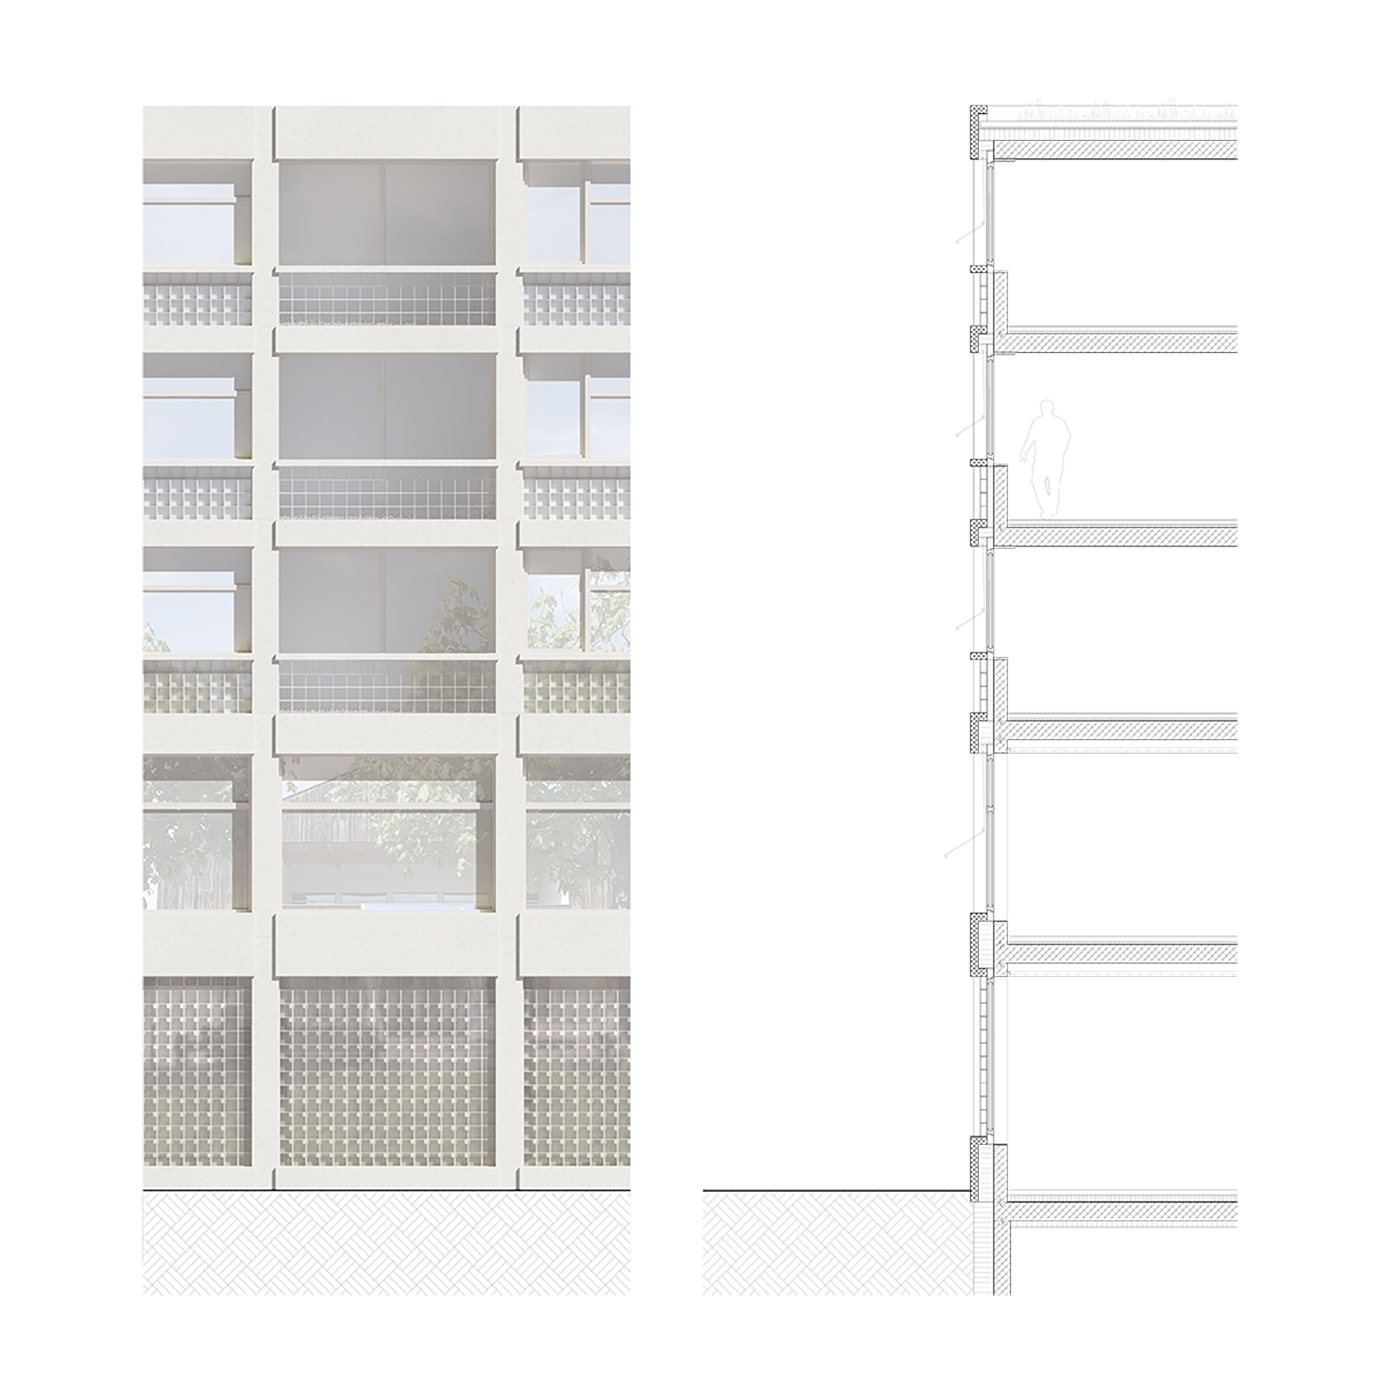 buan architekten – Projektwettbewerb Wilisauer Bote – Fassadenschnitt